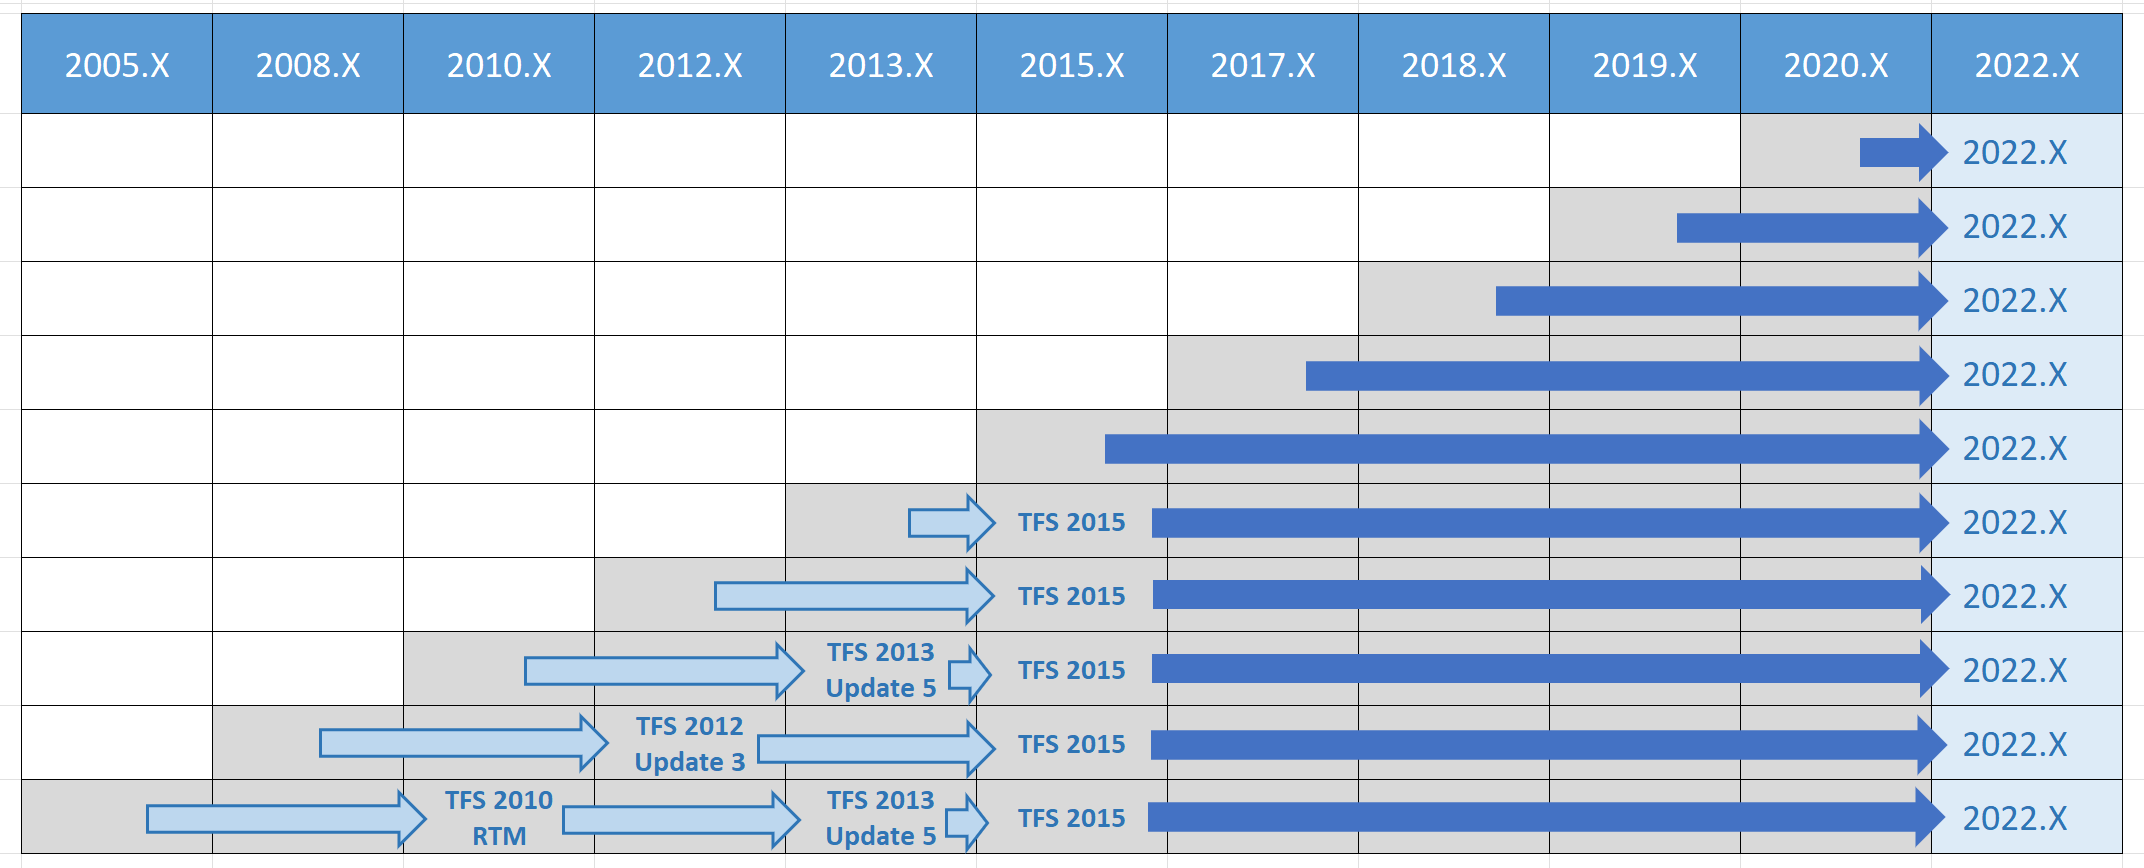 Azure DevOps 2022 Upgradepfadmatrix für alle früheren Versionen.